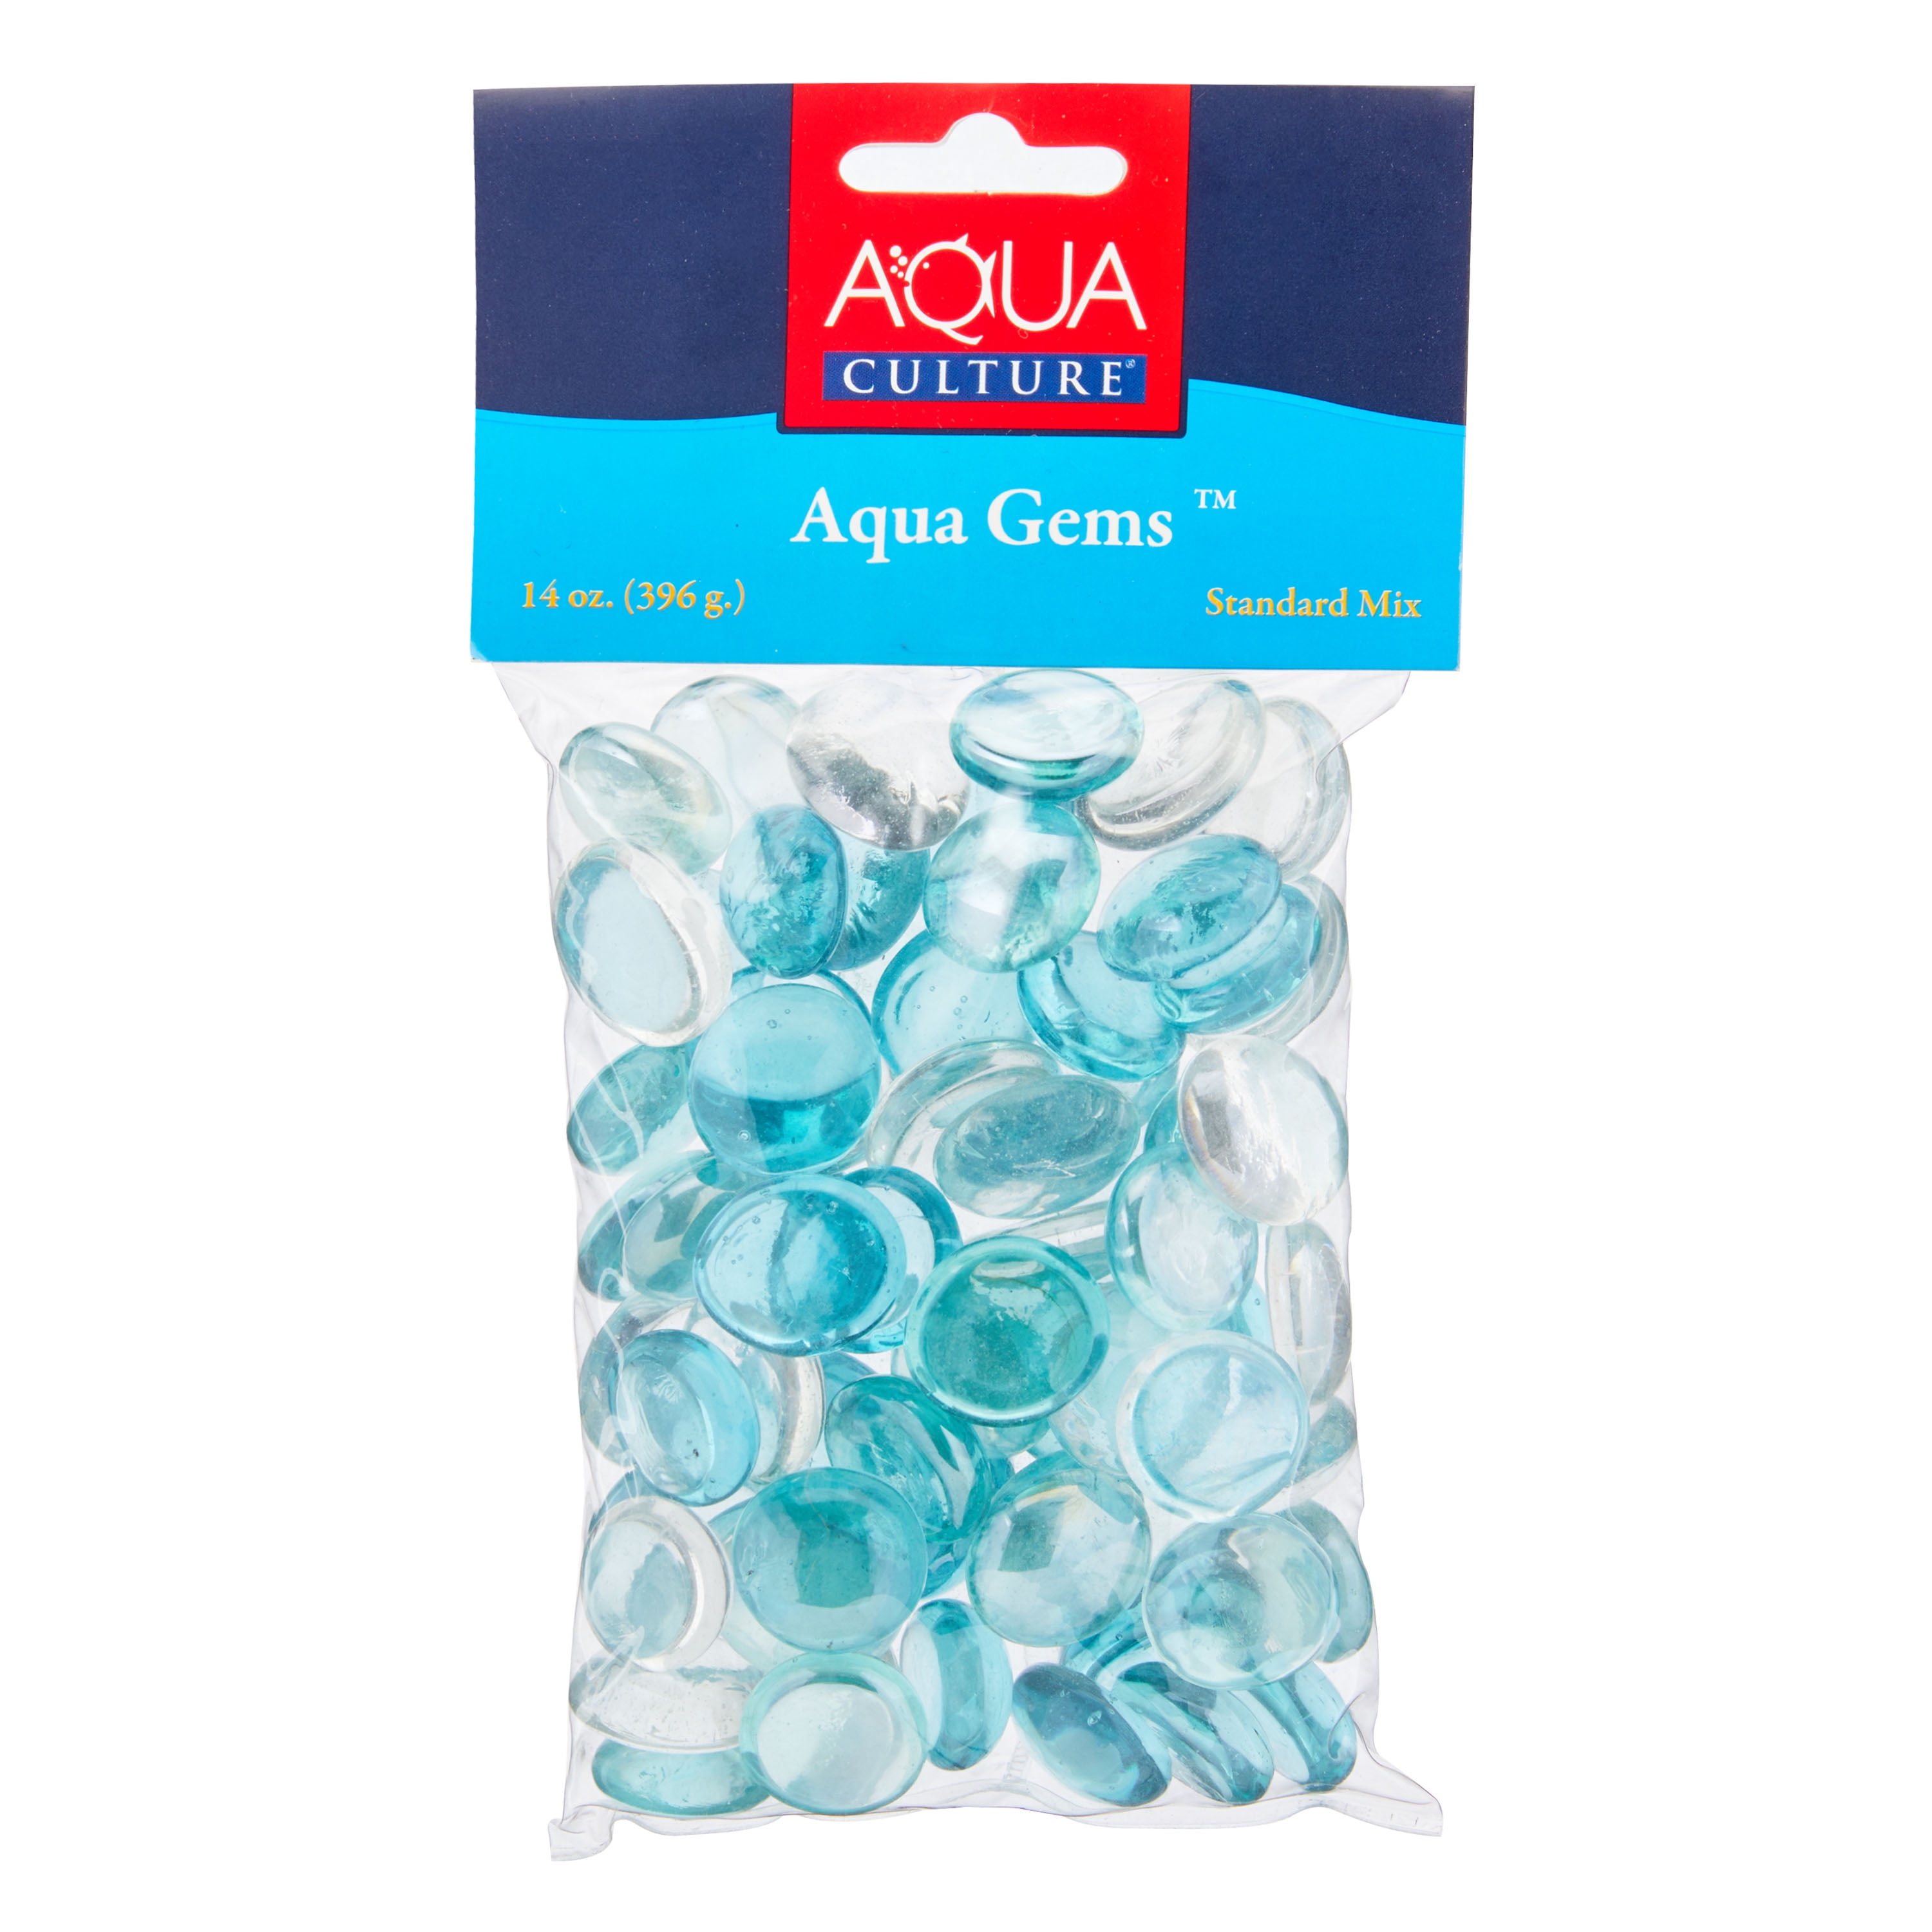 Aqua Culture Aqua Gems, Standard Mix, 14 oz